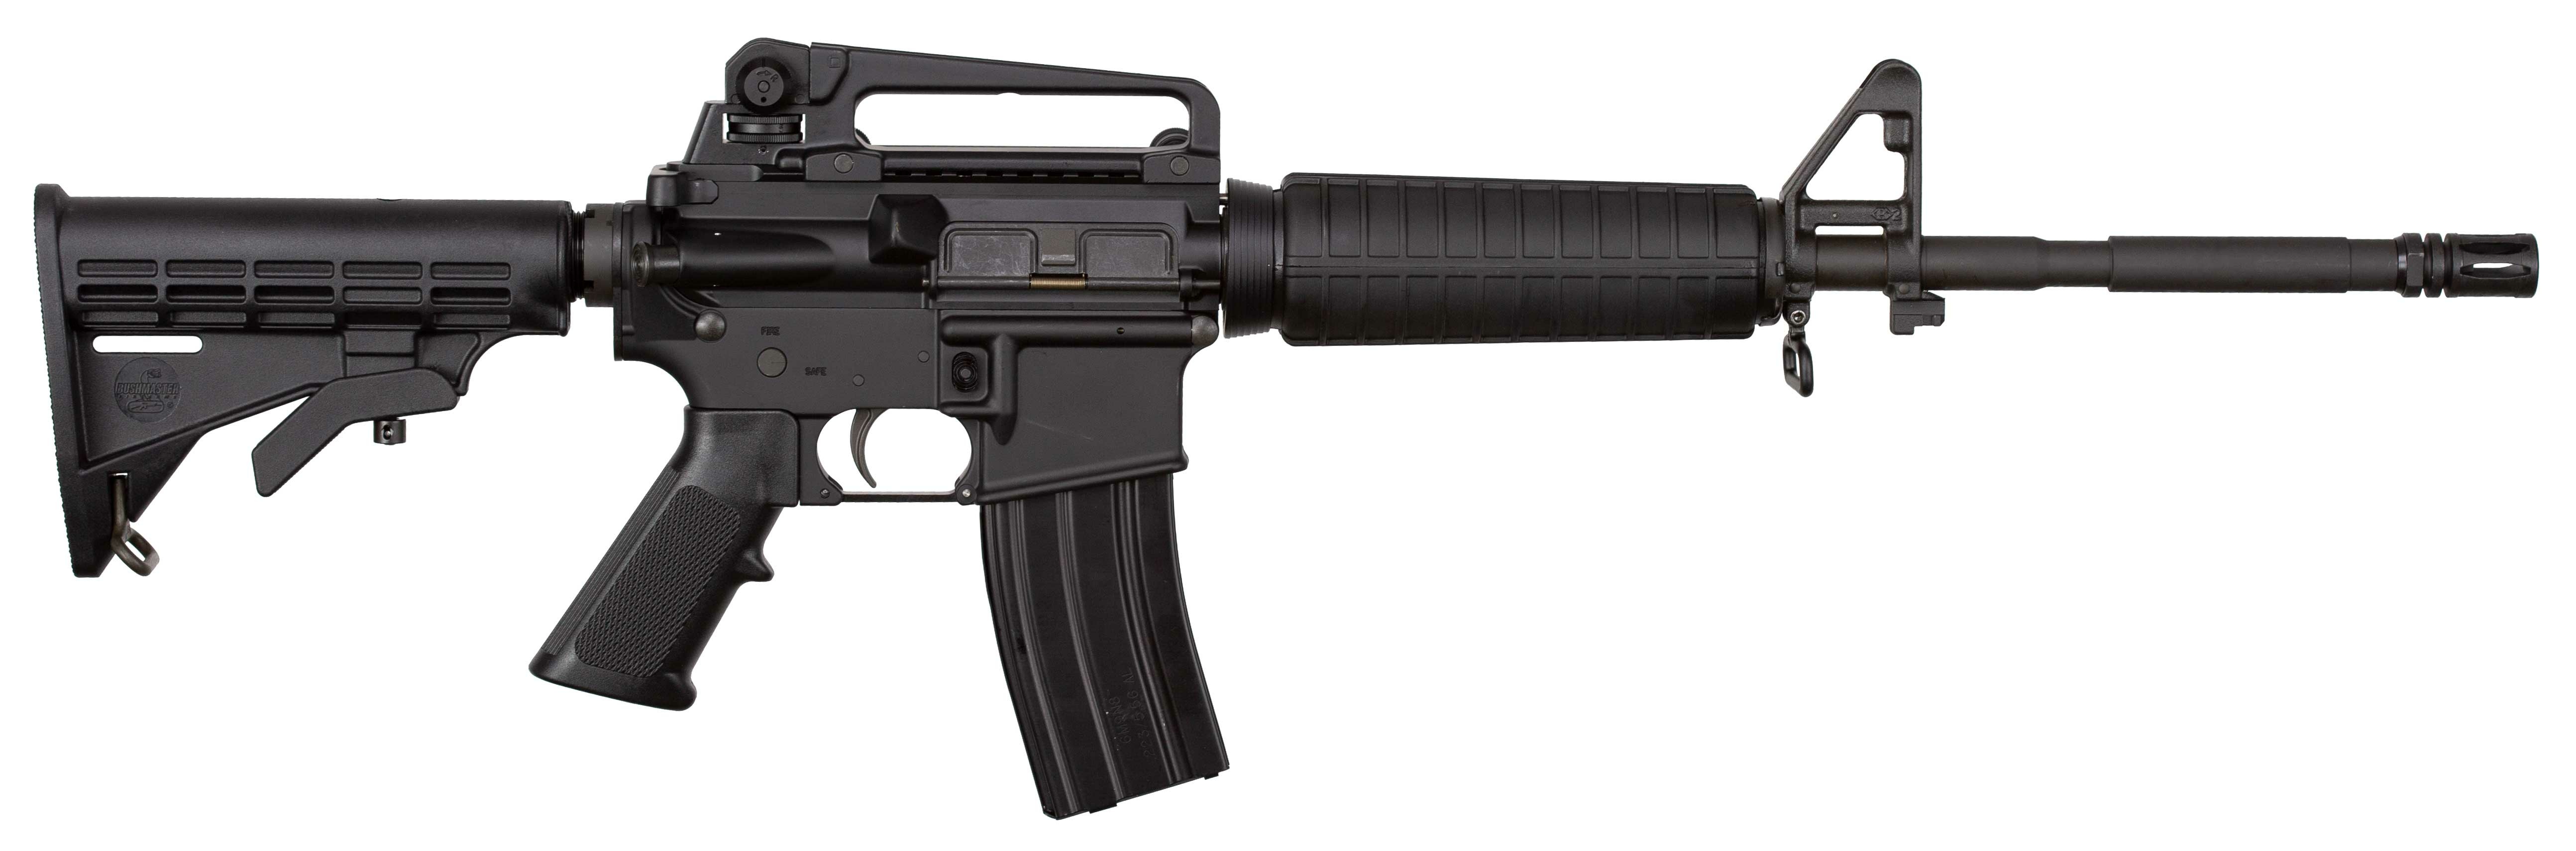 AR-15 Rifle